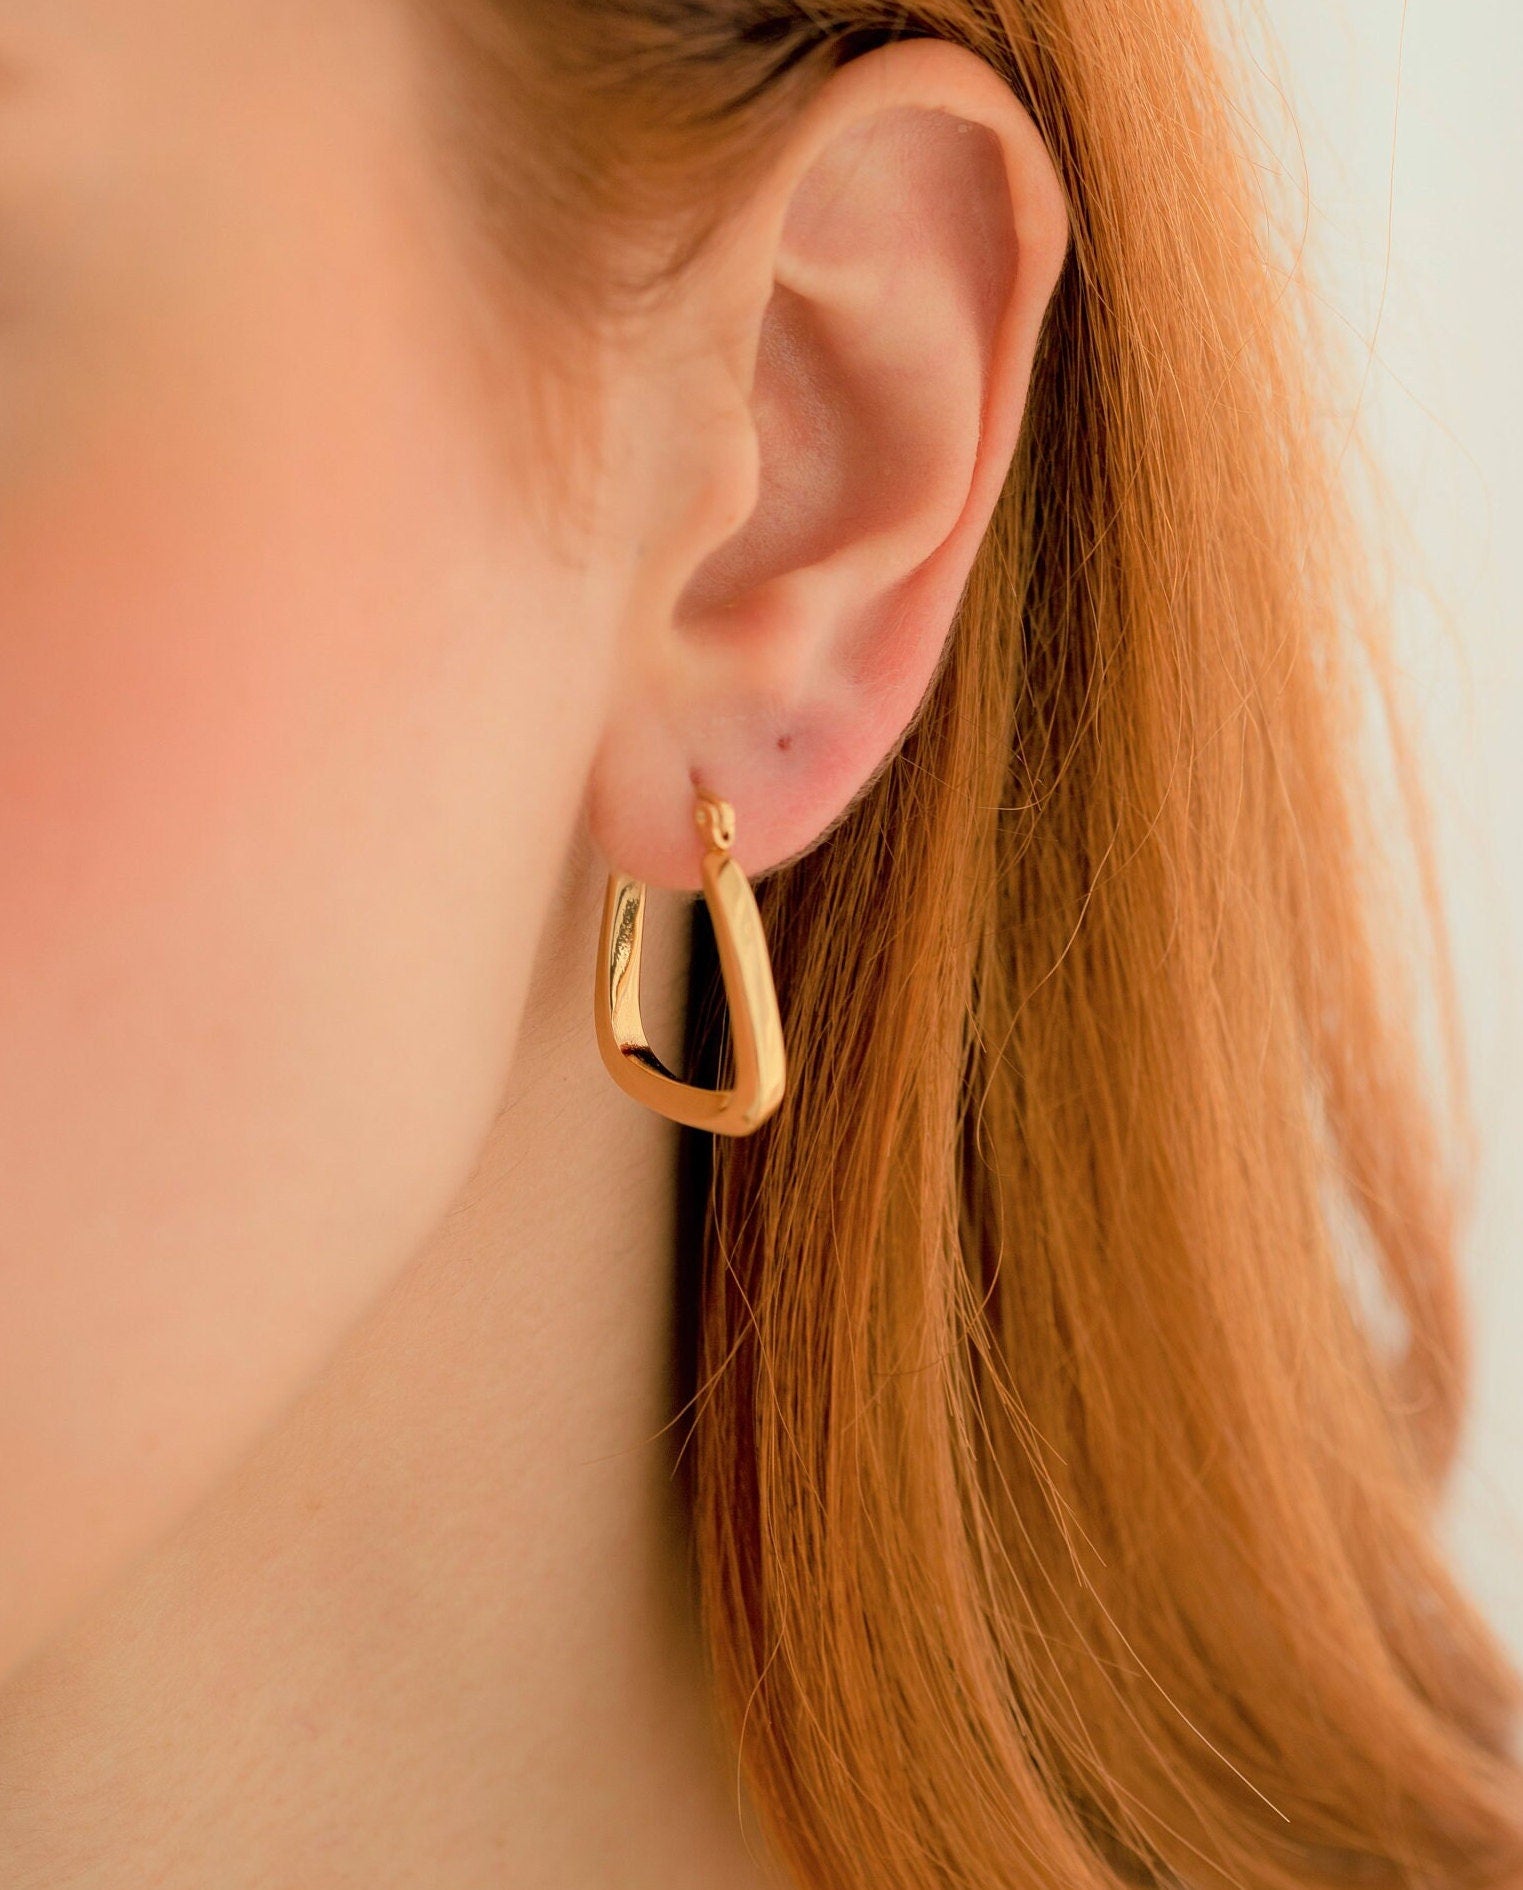 Square Hoop Earrings, 18K Gold, Minimalist Simple Earrings, Geometric Earrings, Gift For Mom, Unique Jewelry, Modern Earrings For Women